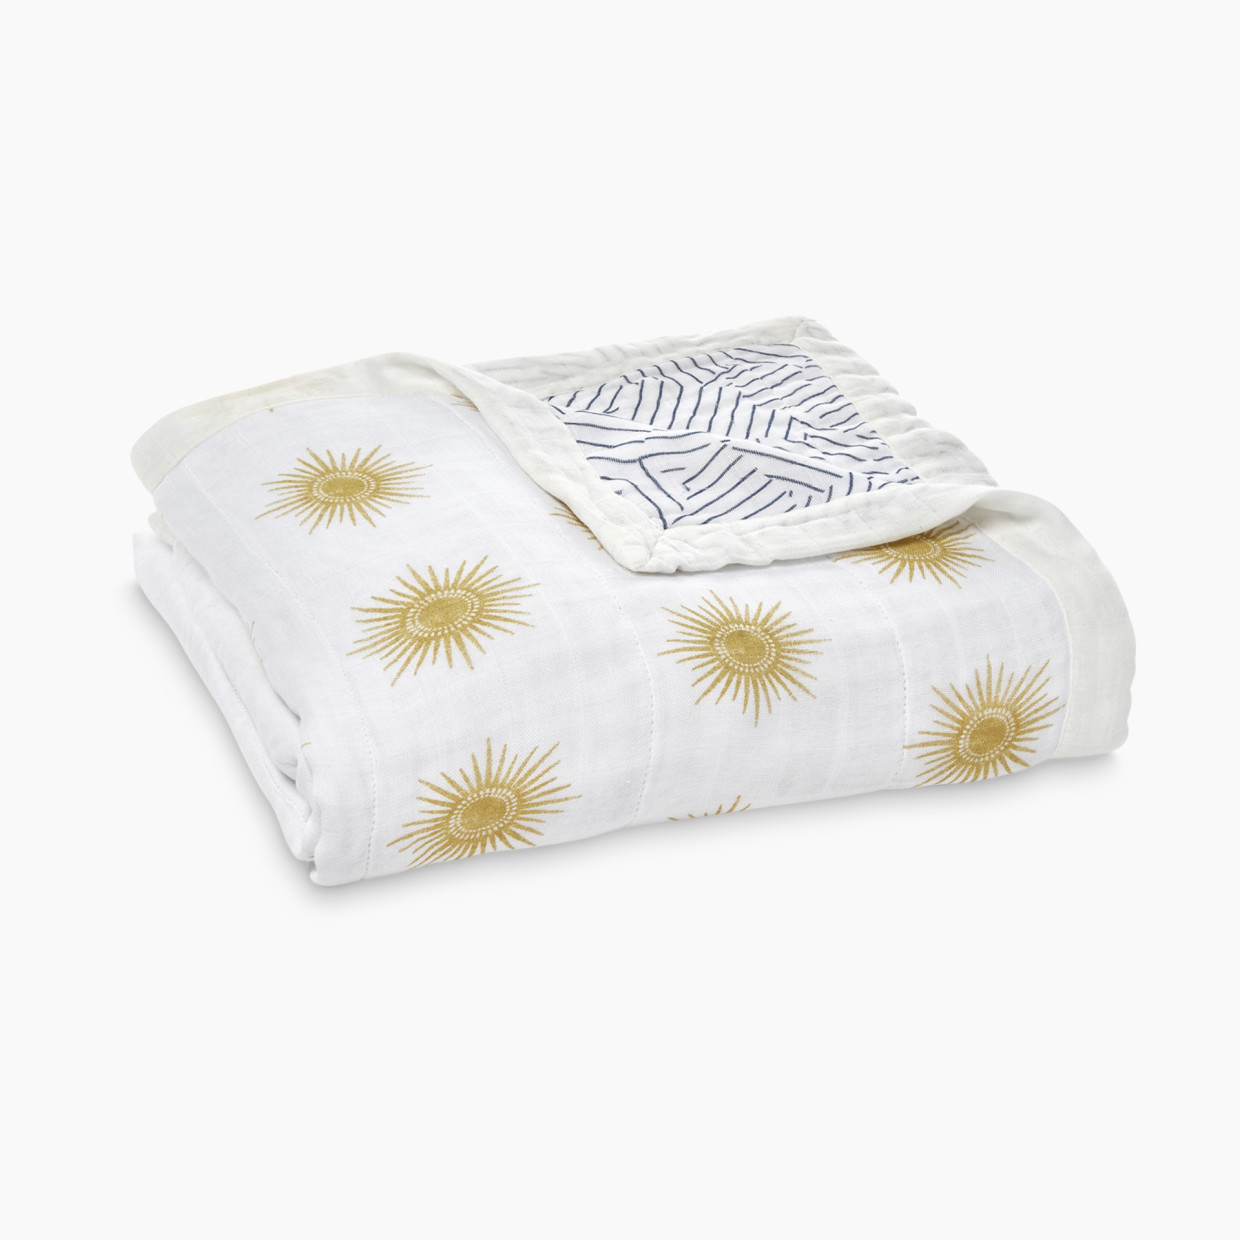 Aden + Anais Silky Soft Dream Blanket - Golden Sun   Sun.